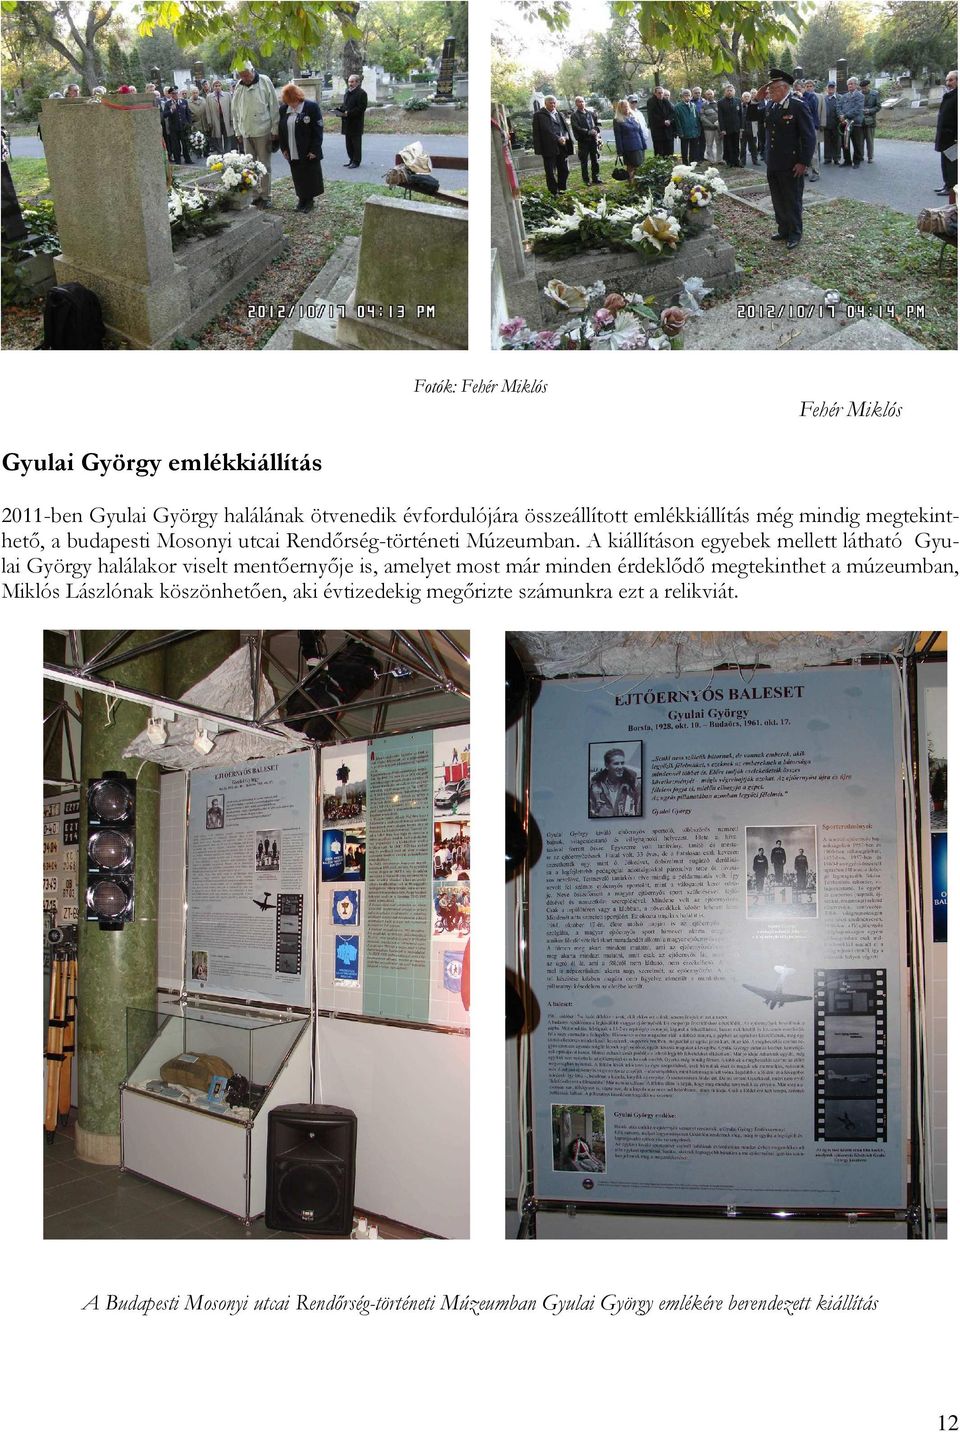 A kiállításon egyebek mellett látható Gyulai György halálakor viselt mentőernyője is, amelyet most már minden érdeklődő megtekinthet a